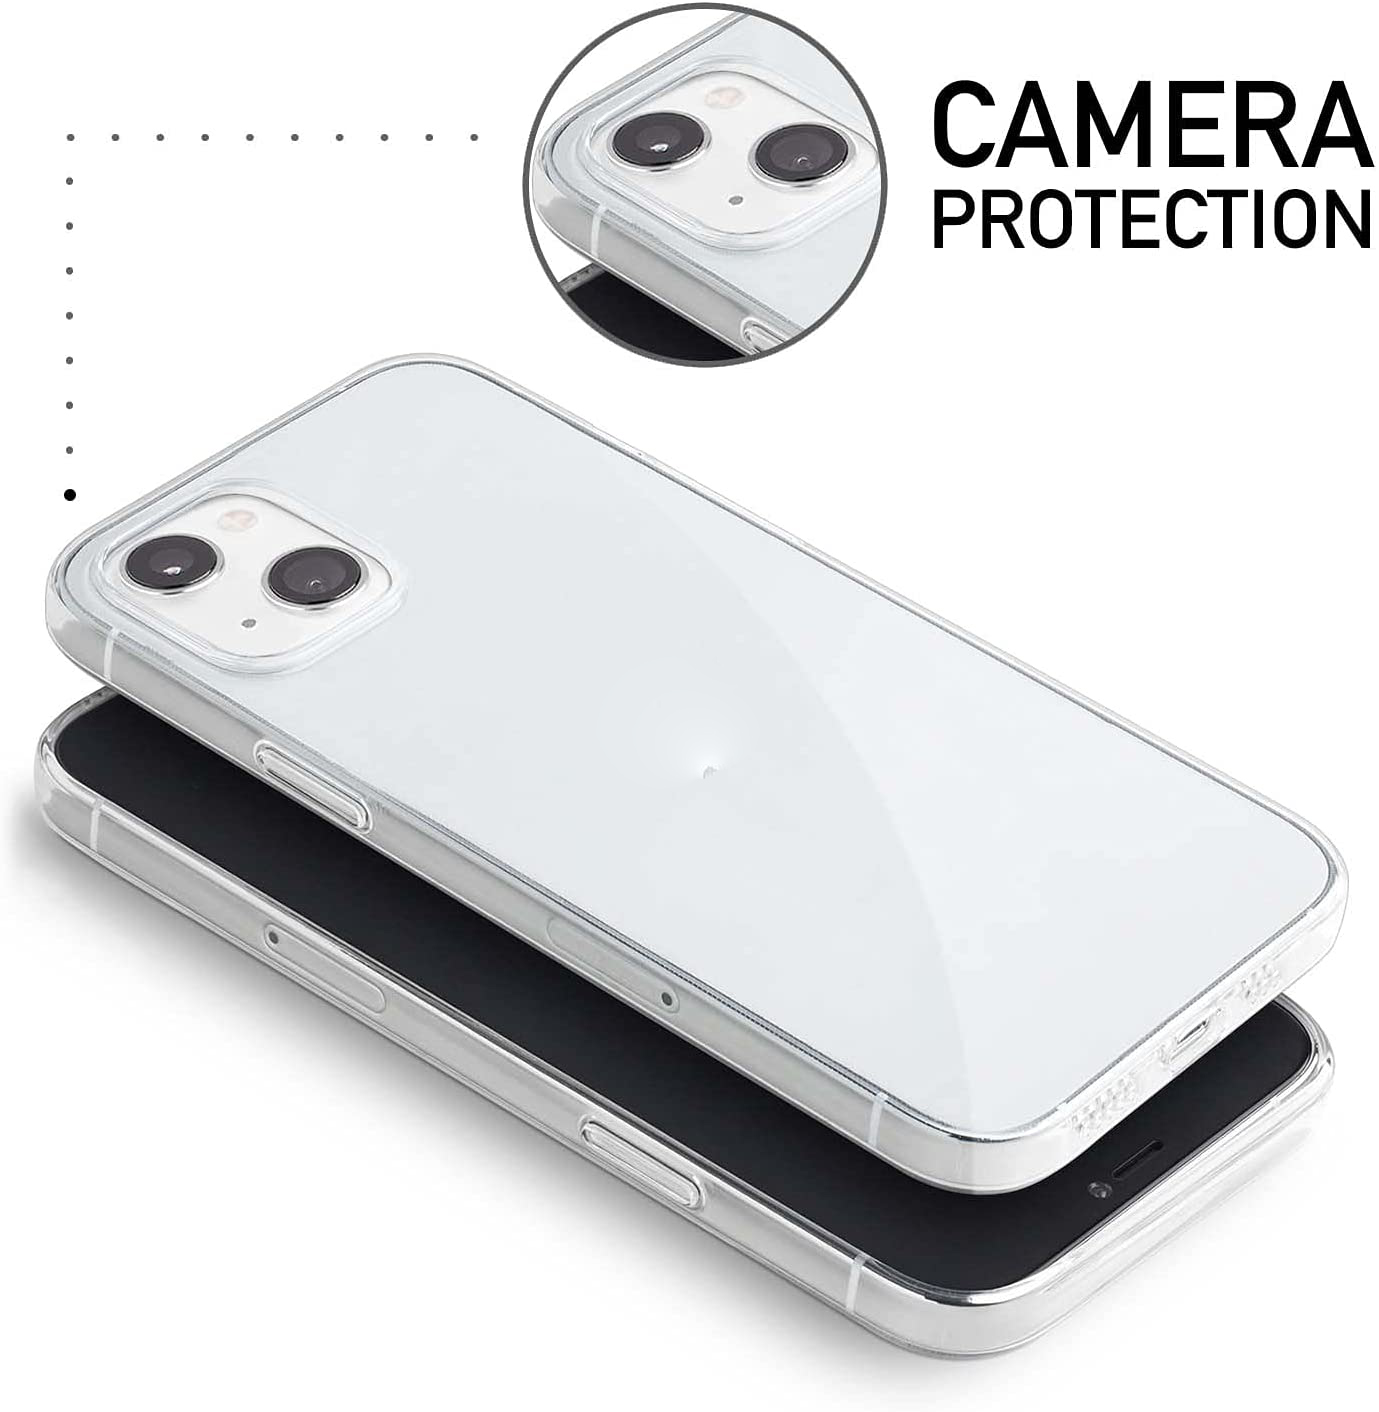 Ốp lưng silicon dẻo trong suốt cho iPhone 13 Mini hiệu Ultra Thin siêu mỏng 0.6mm - Hàng nhập khẩu